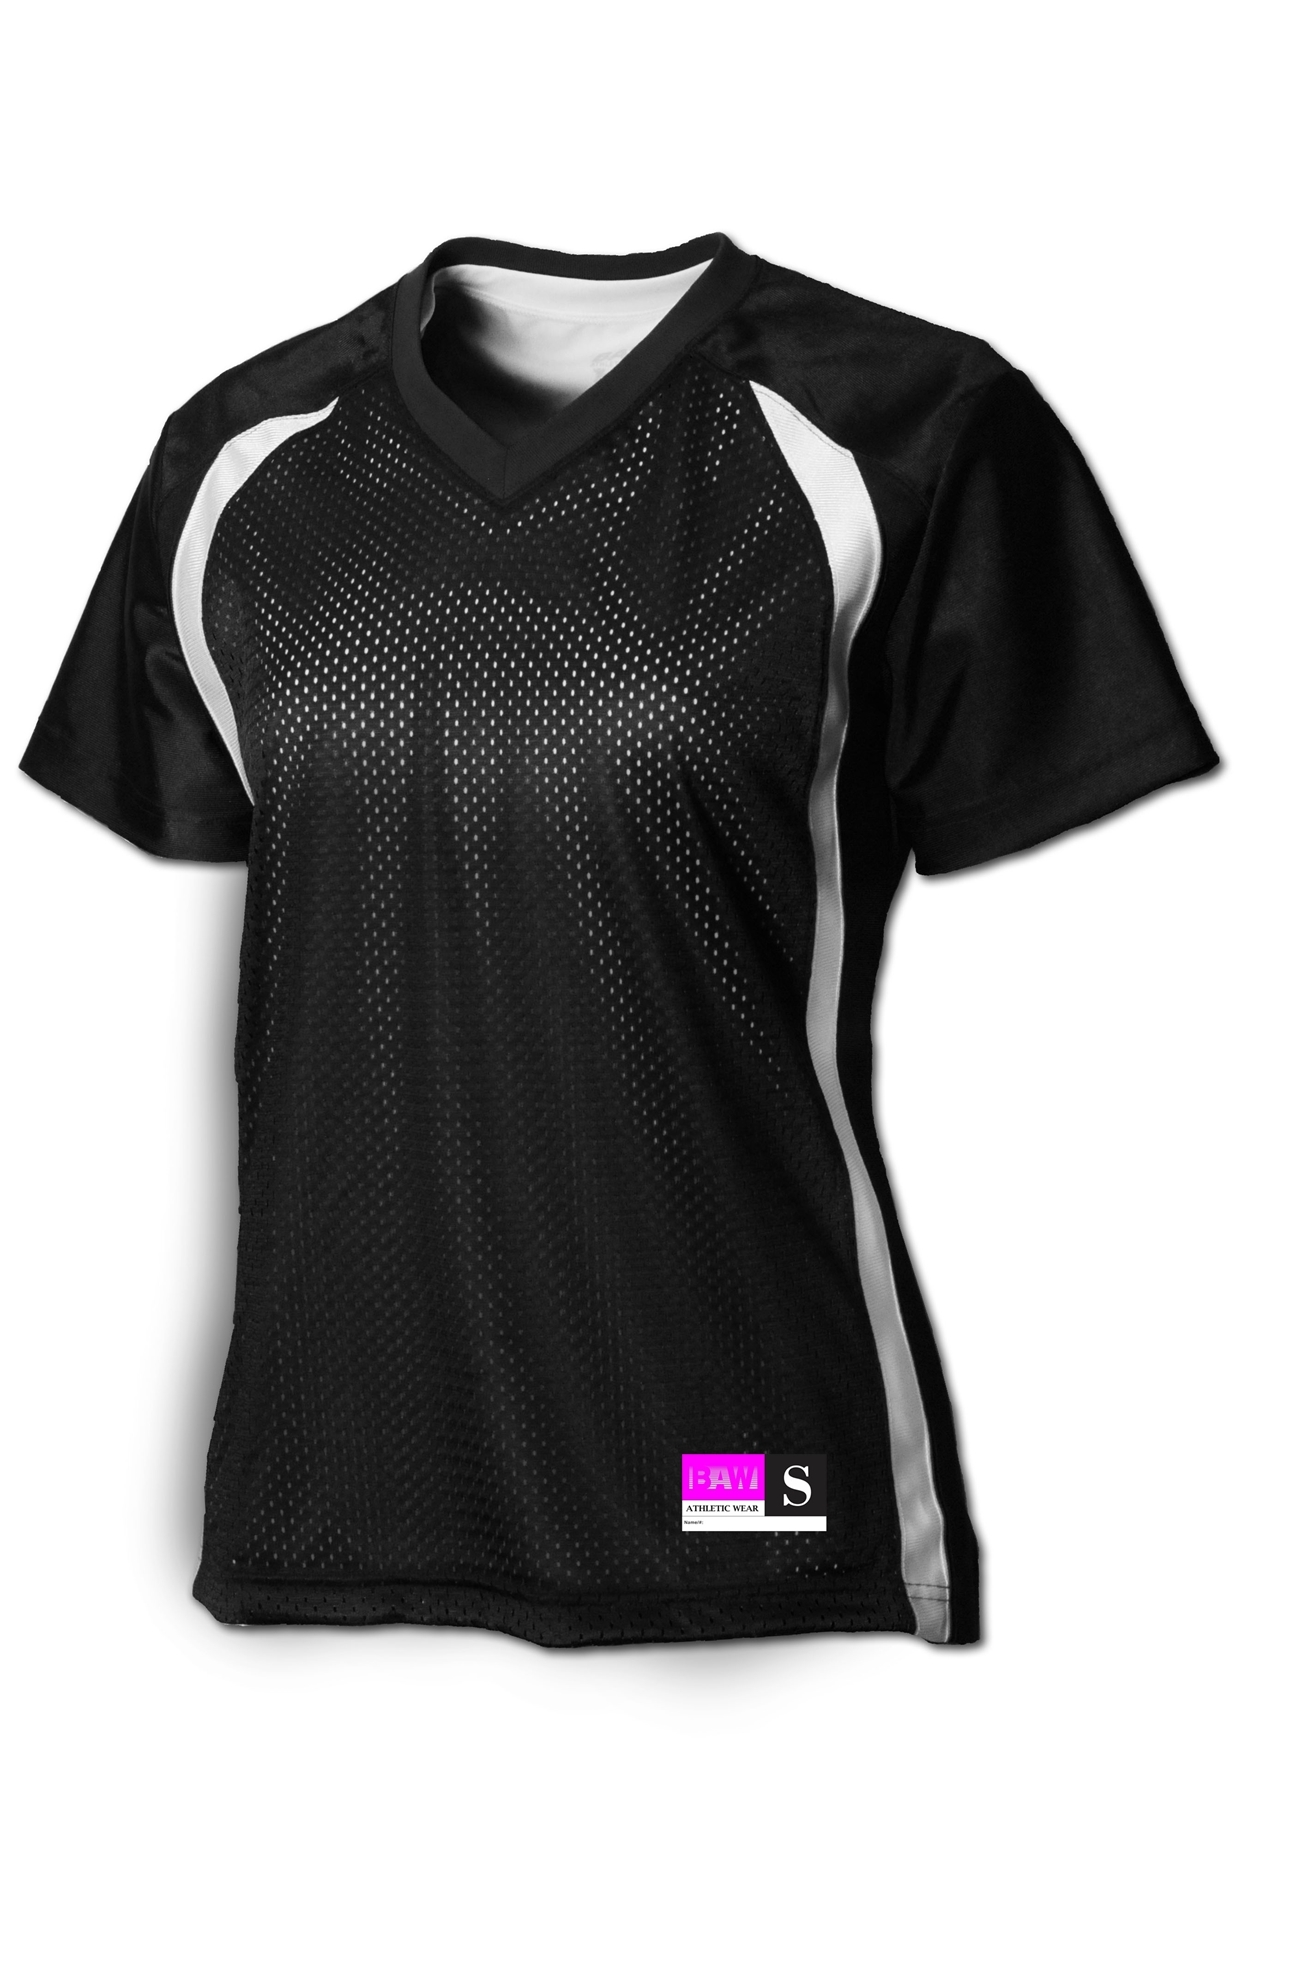 BAW Athletic Wear S1961 - Ladies Fan Jersey Short Sleeve